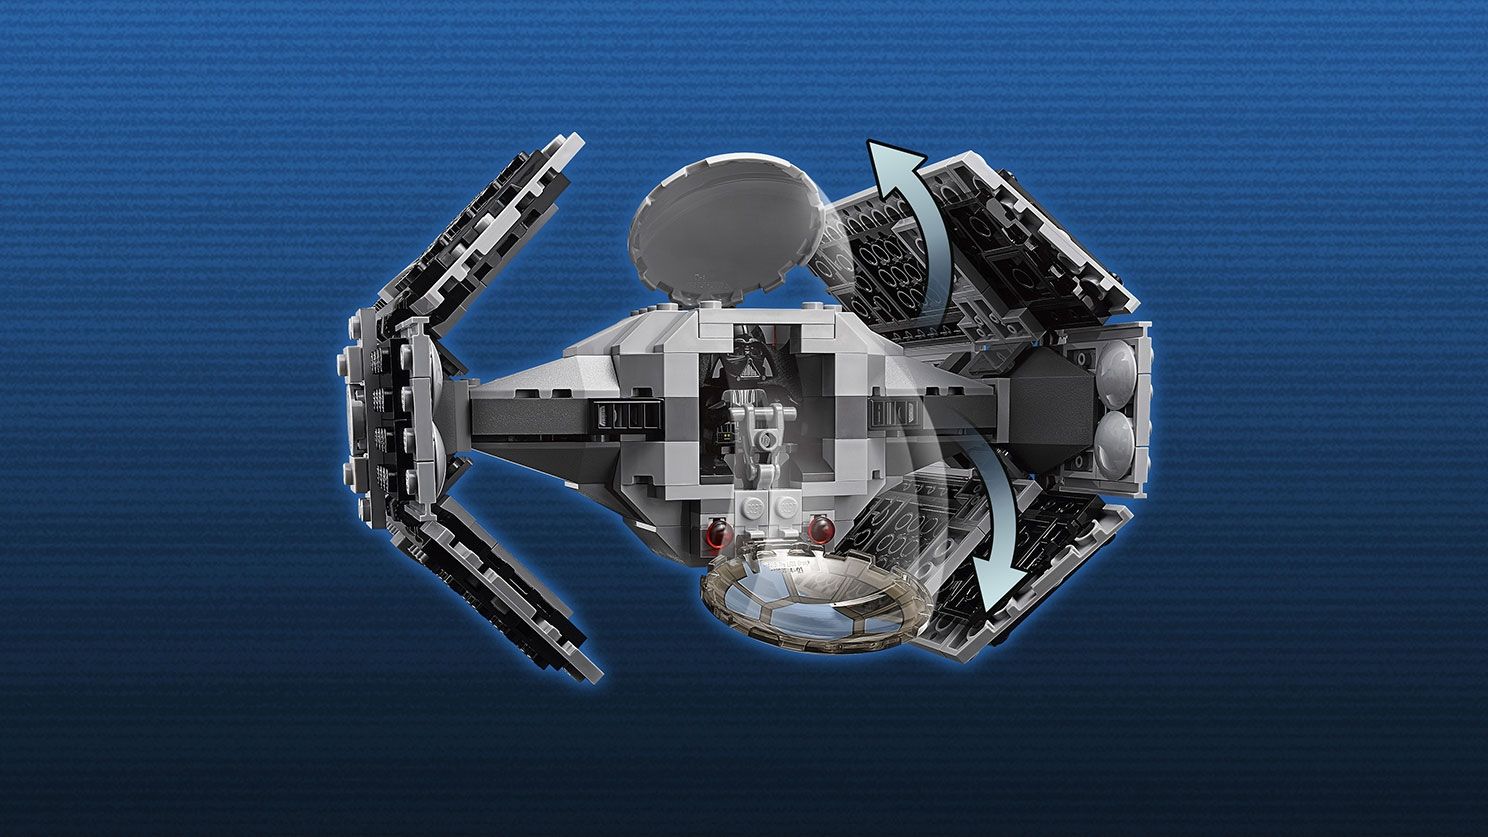 LEGO Star Wars 75150 Vader's TIE Advanced vs. A-Wing Starfighter LEGO_75150_WEB_SEC03_1488.jpg